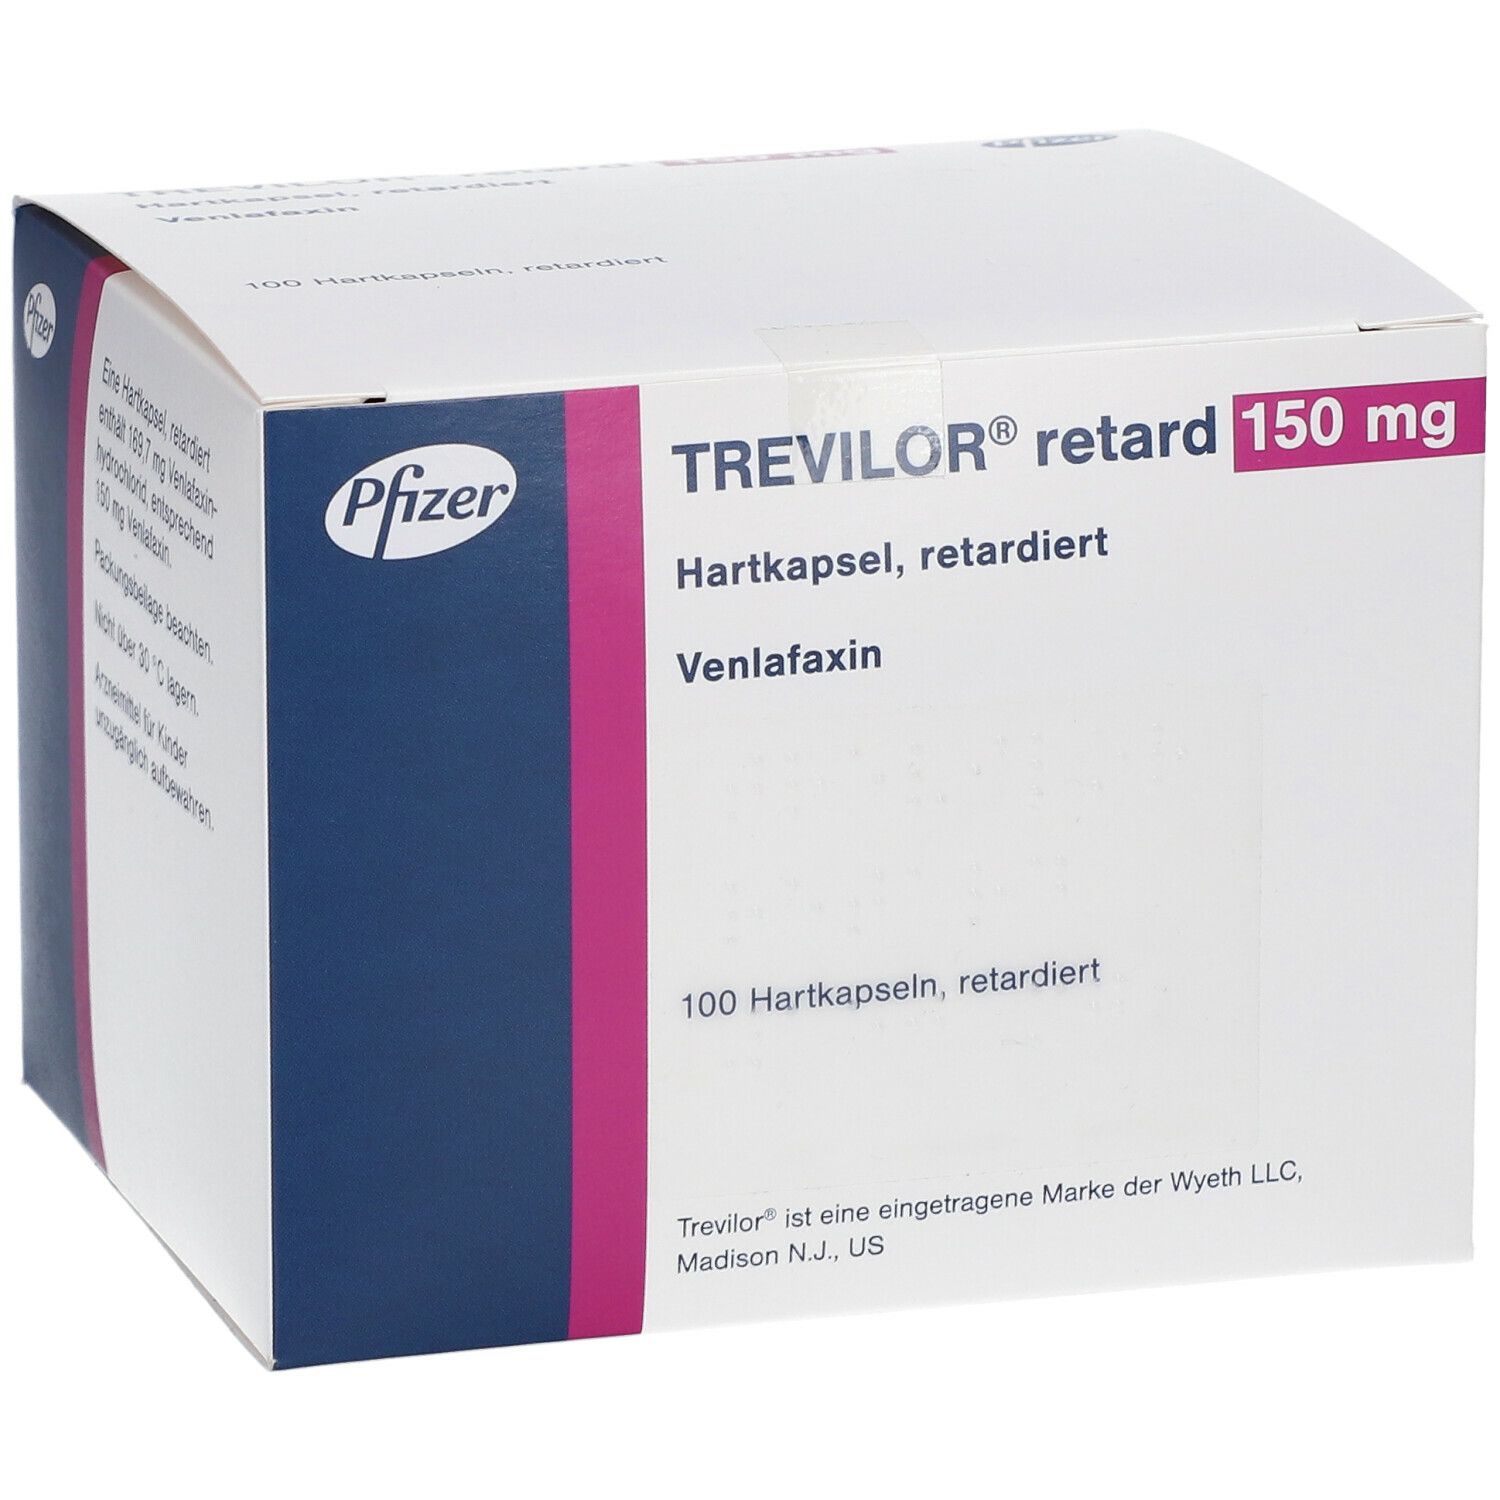 Trevilor Retard 150 mg  Retardiert